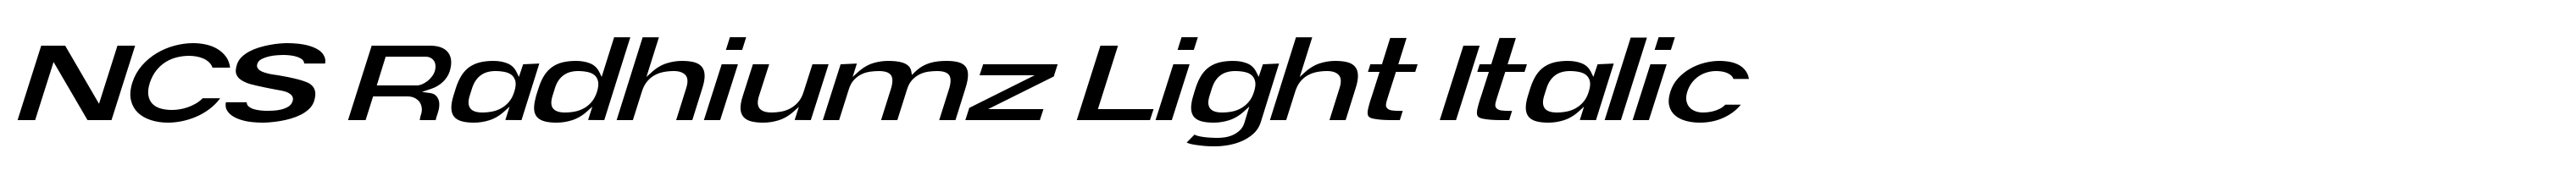 NCS Radhiumz Light Italic